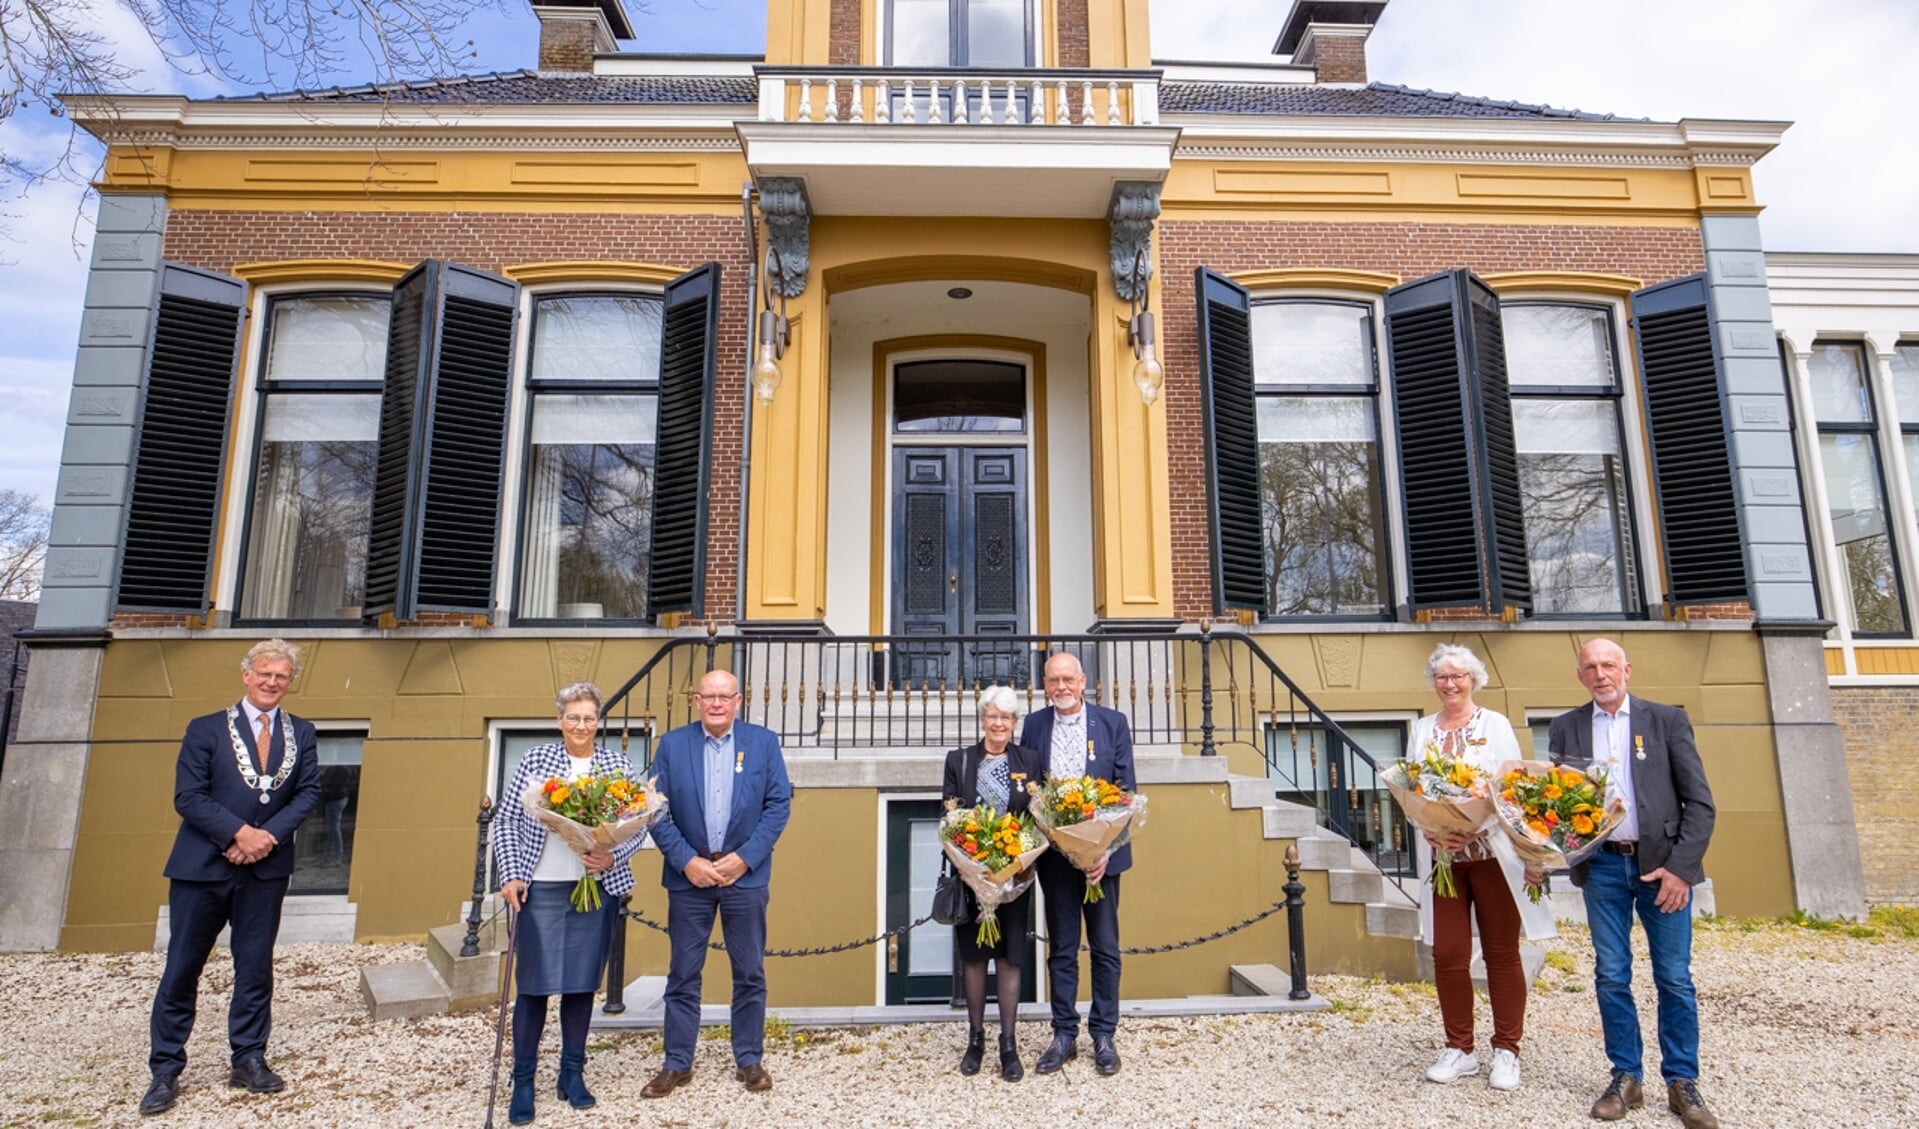 v.l.n.r. burgemeester Oebele Brouwer, Foppe van Dekken met zijn echtgenote, echtpaar Dijkstra-Stiksma en echtpaar Veenstra-Komrij